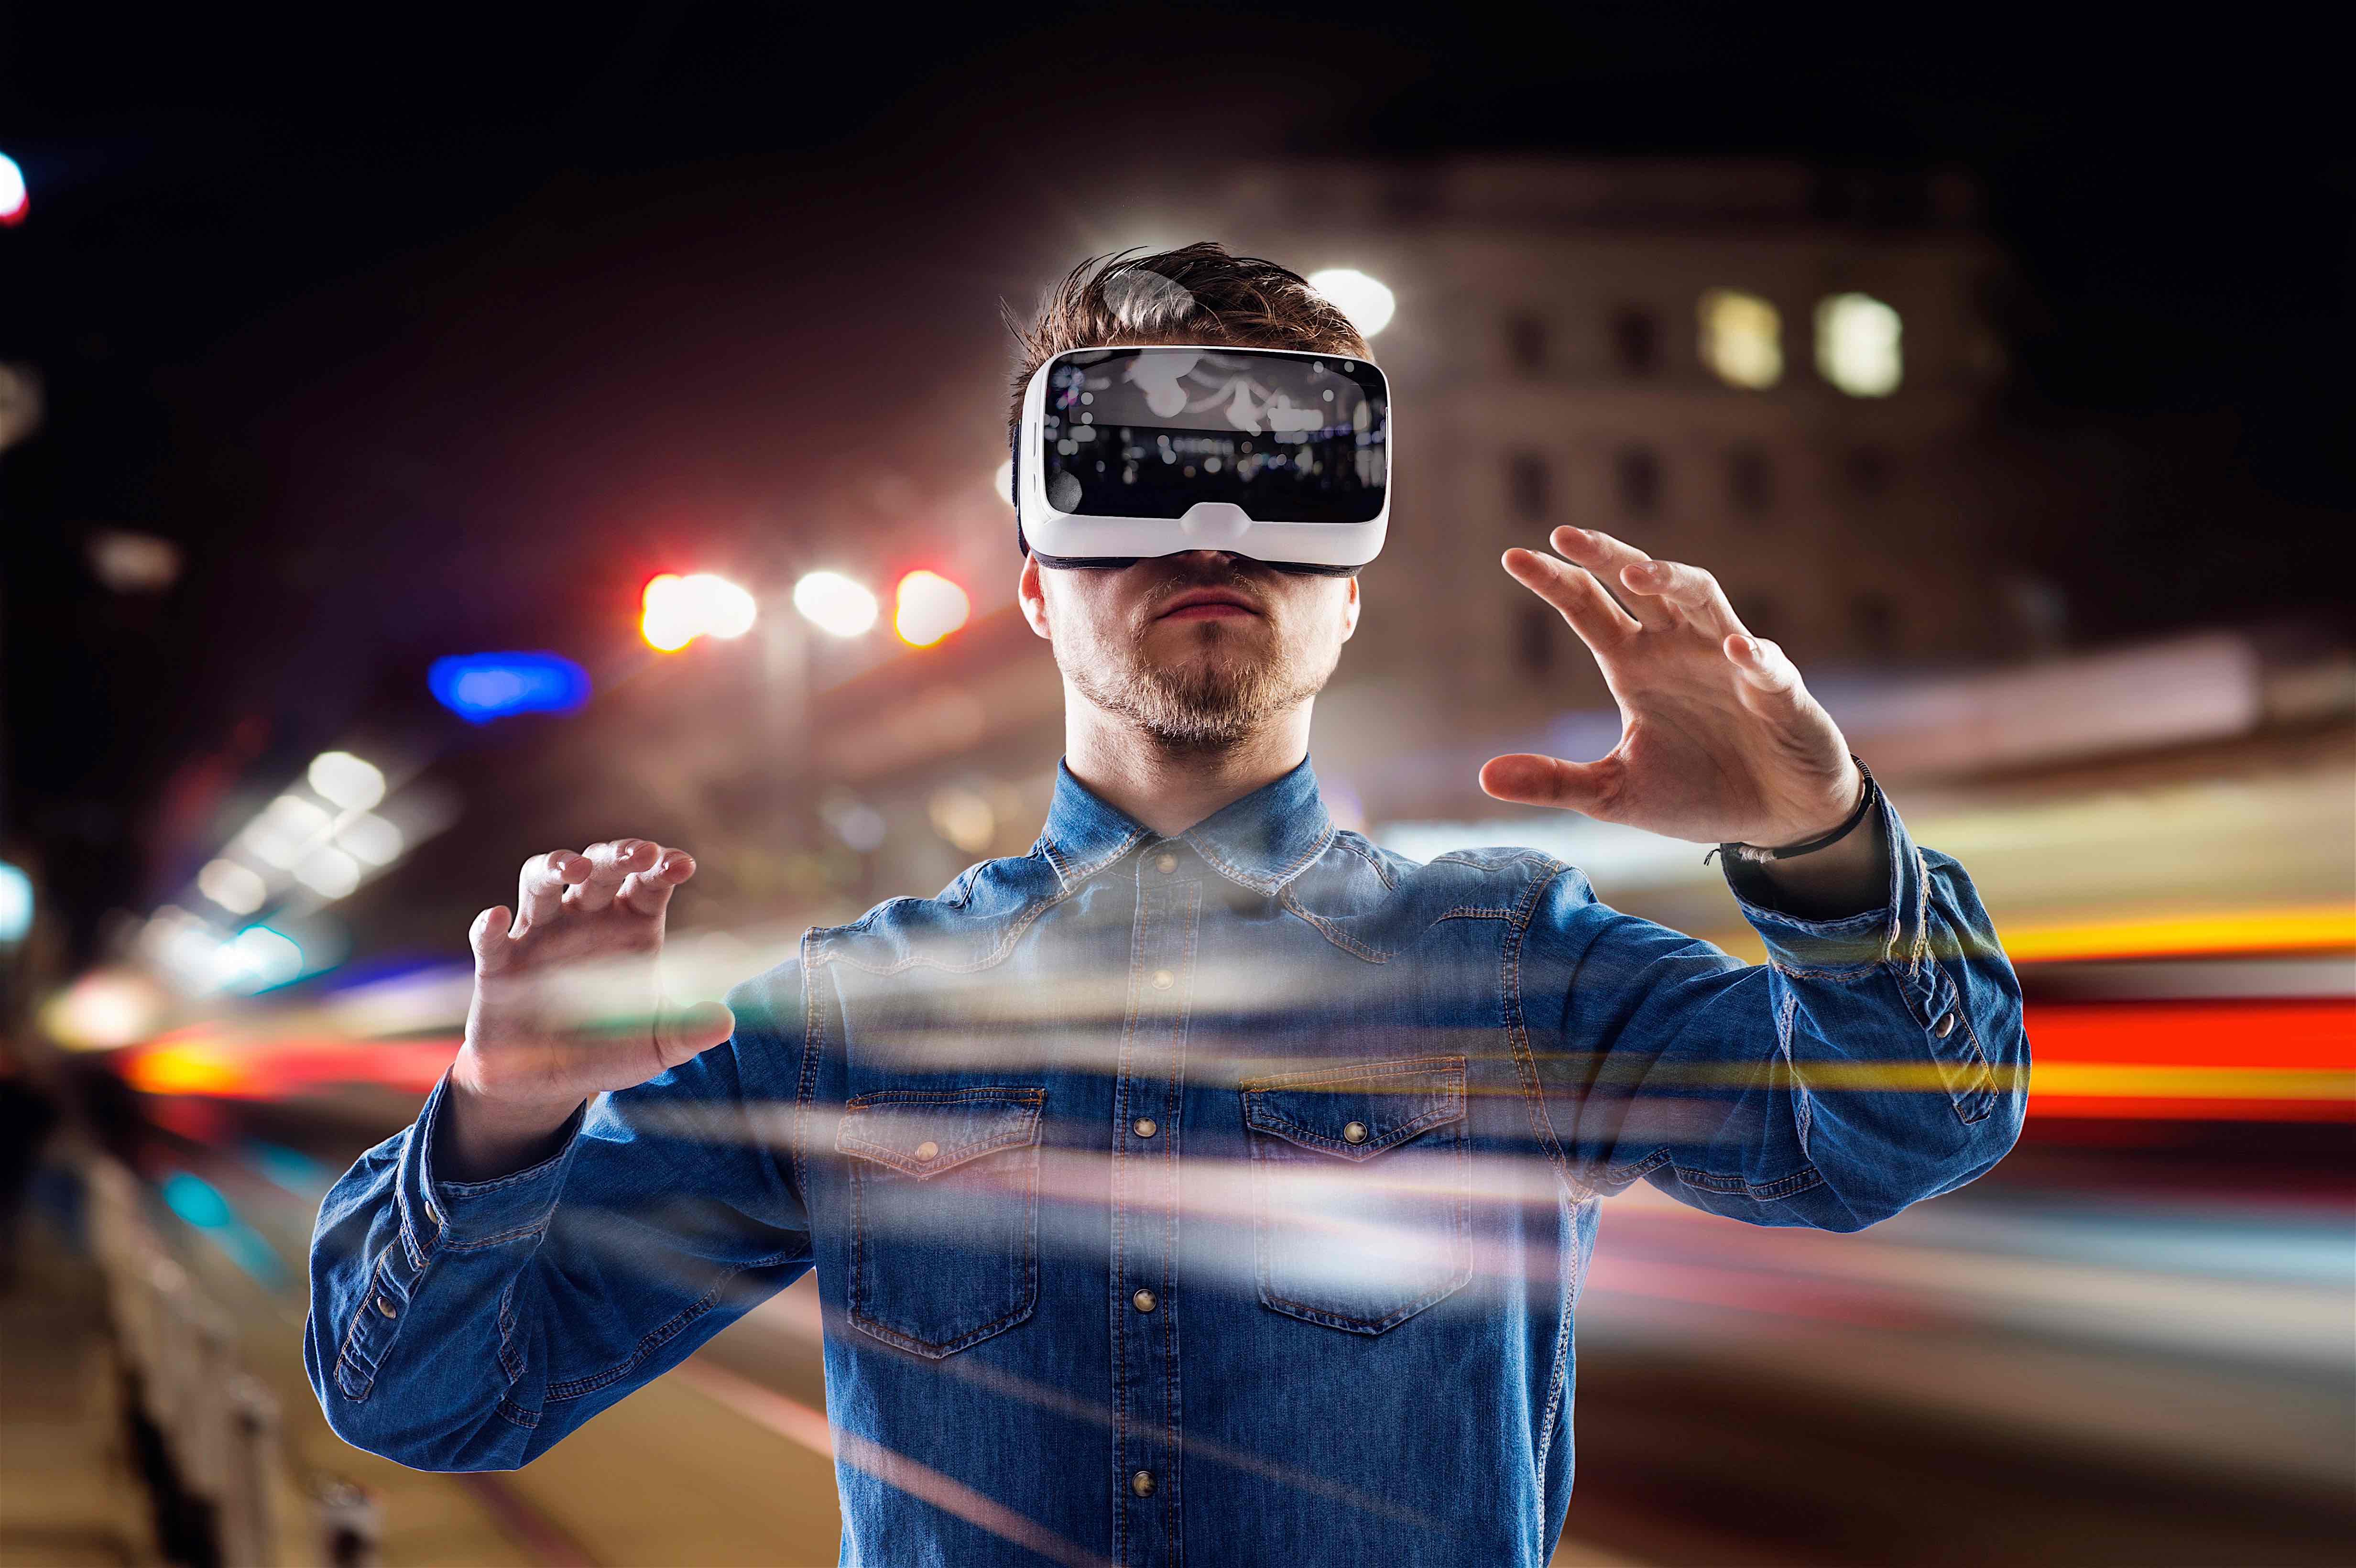 Vr реклама. VR виртуальная реальность. Вируальная реальность. Визуальная реальность. Человек в очках виртуальной реальности.